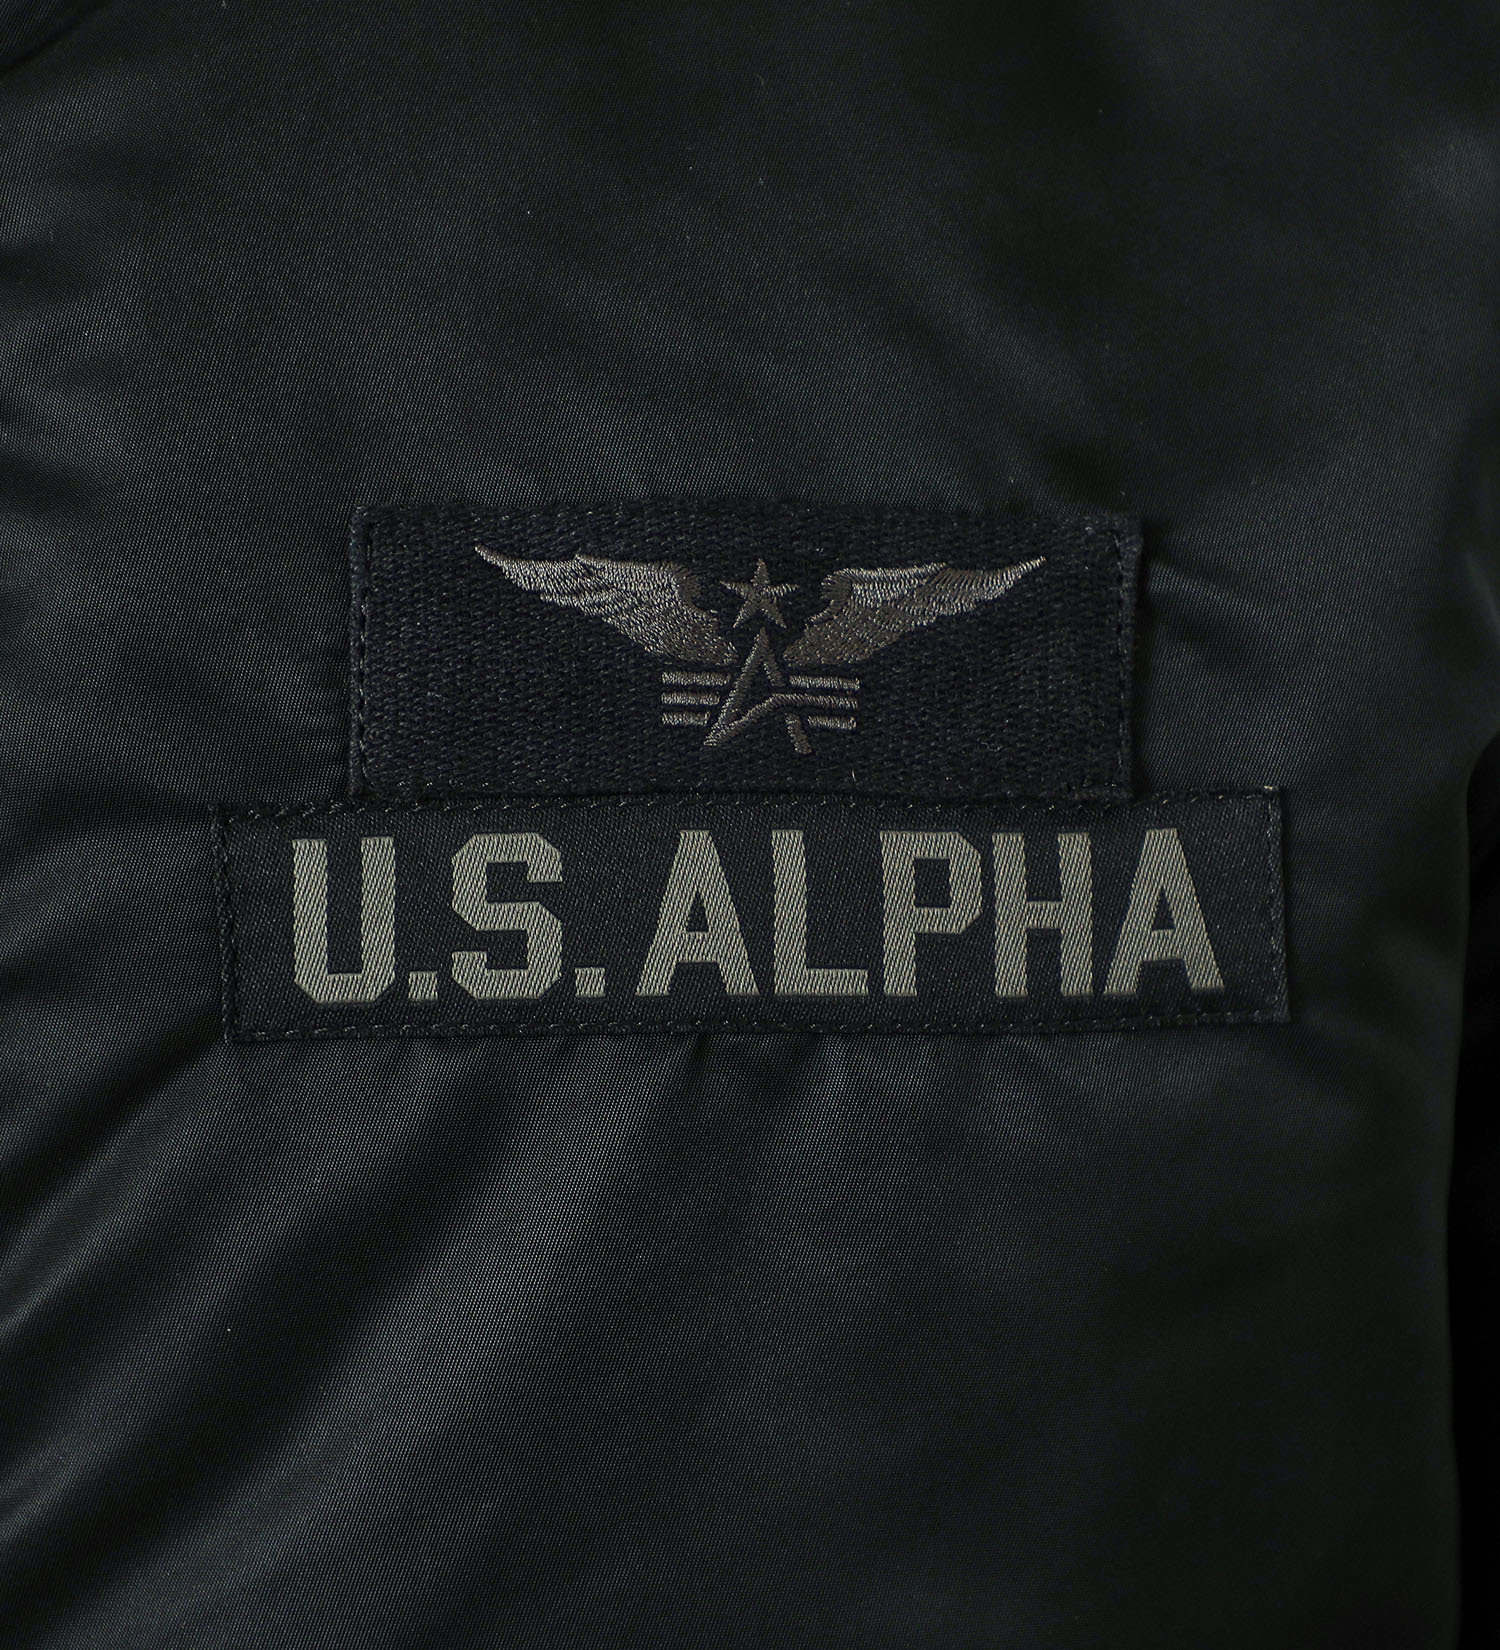 ALPHA(アルファ)のAIR CREW MA-1 Japanスペック|ジャケット/アウター/ミリタリージャケット/メンズ|ブラック